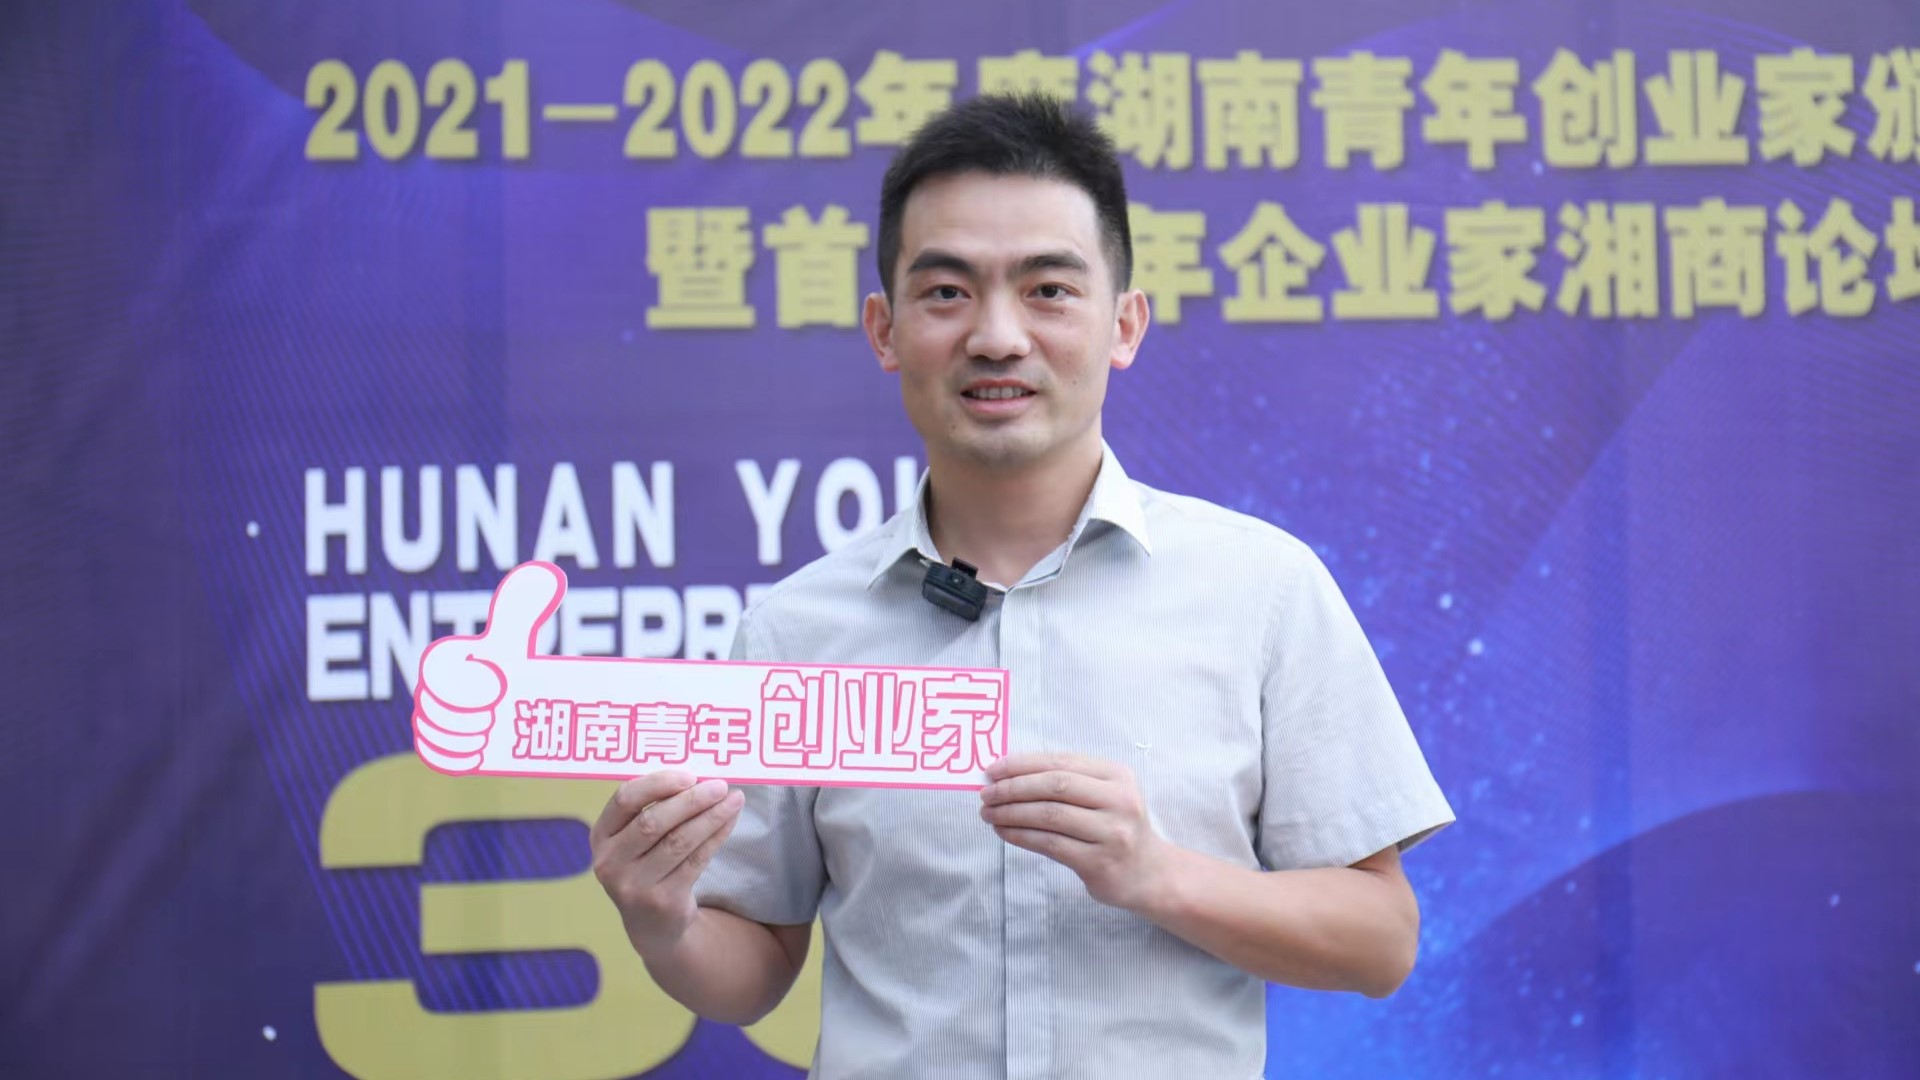 澜建建筑邹洁钢被授予“2021-2022年度湖南青年创业家”奖